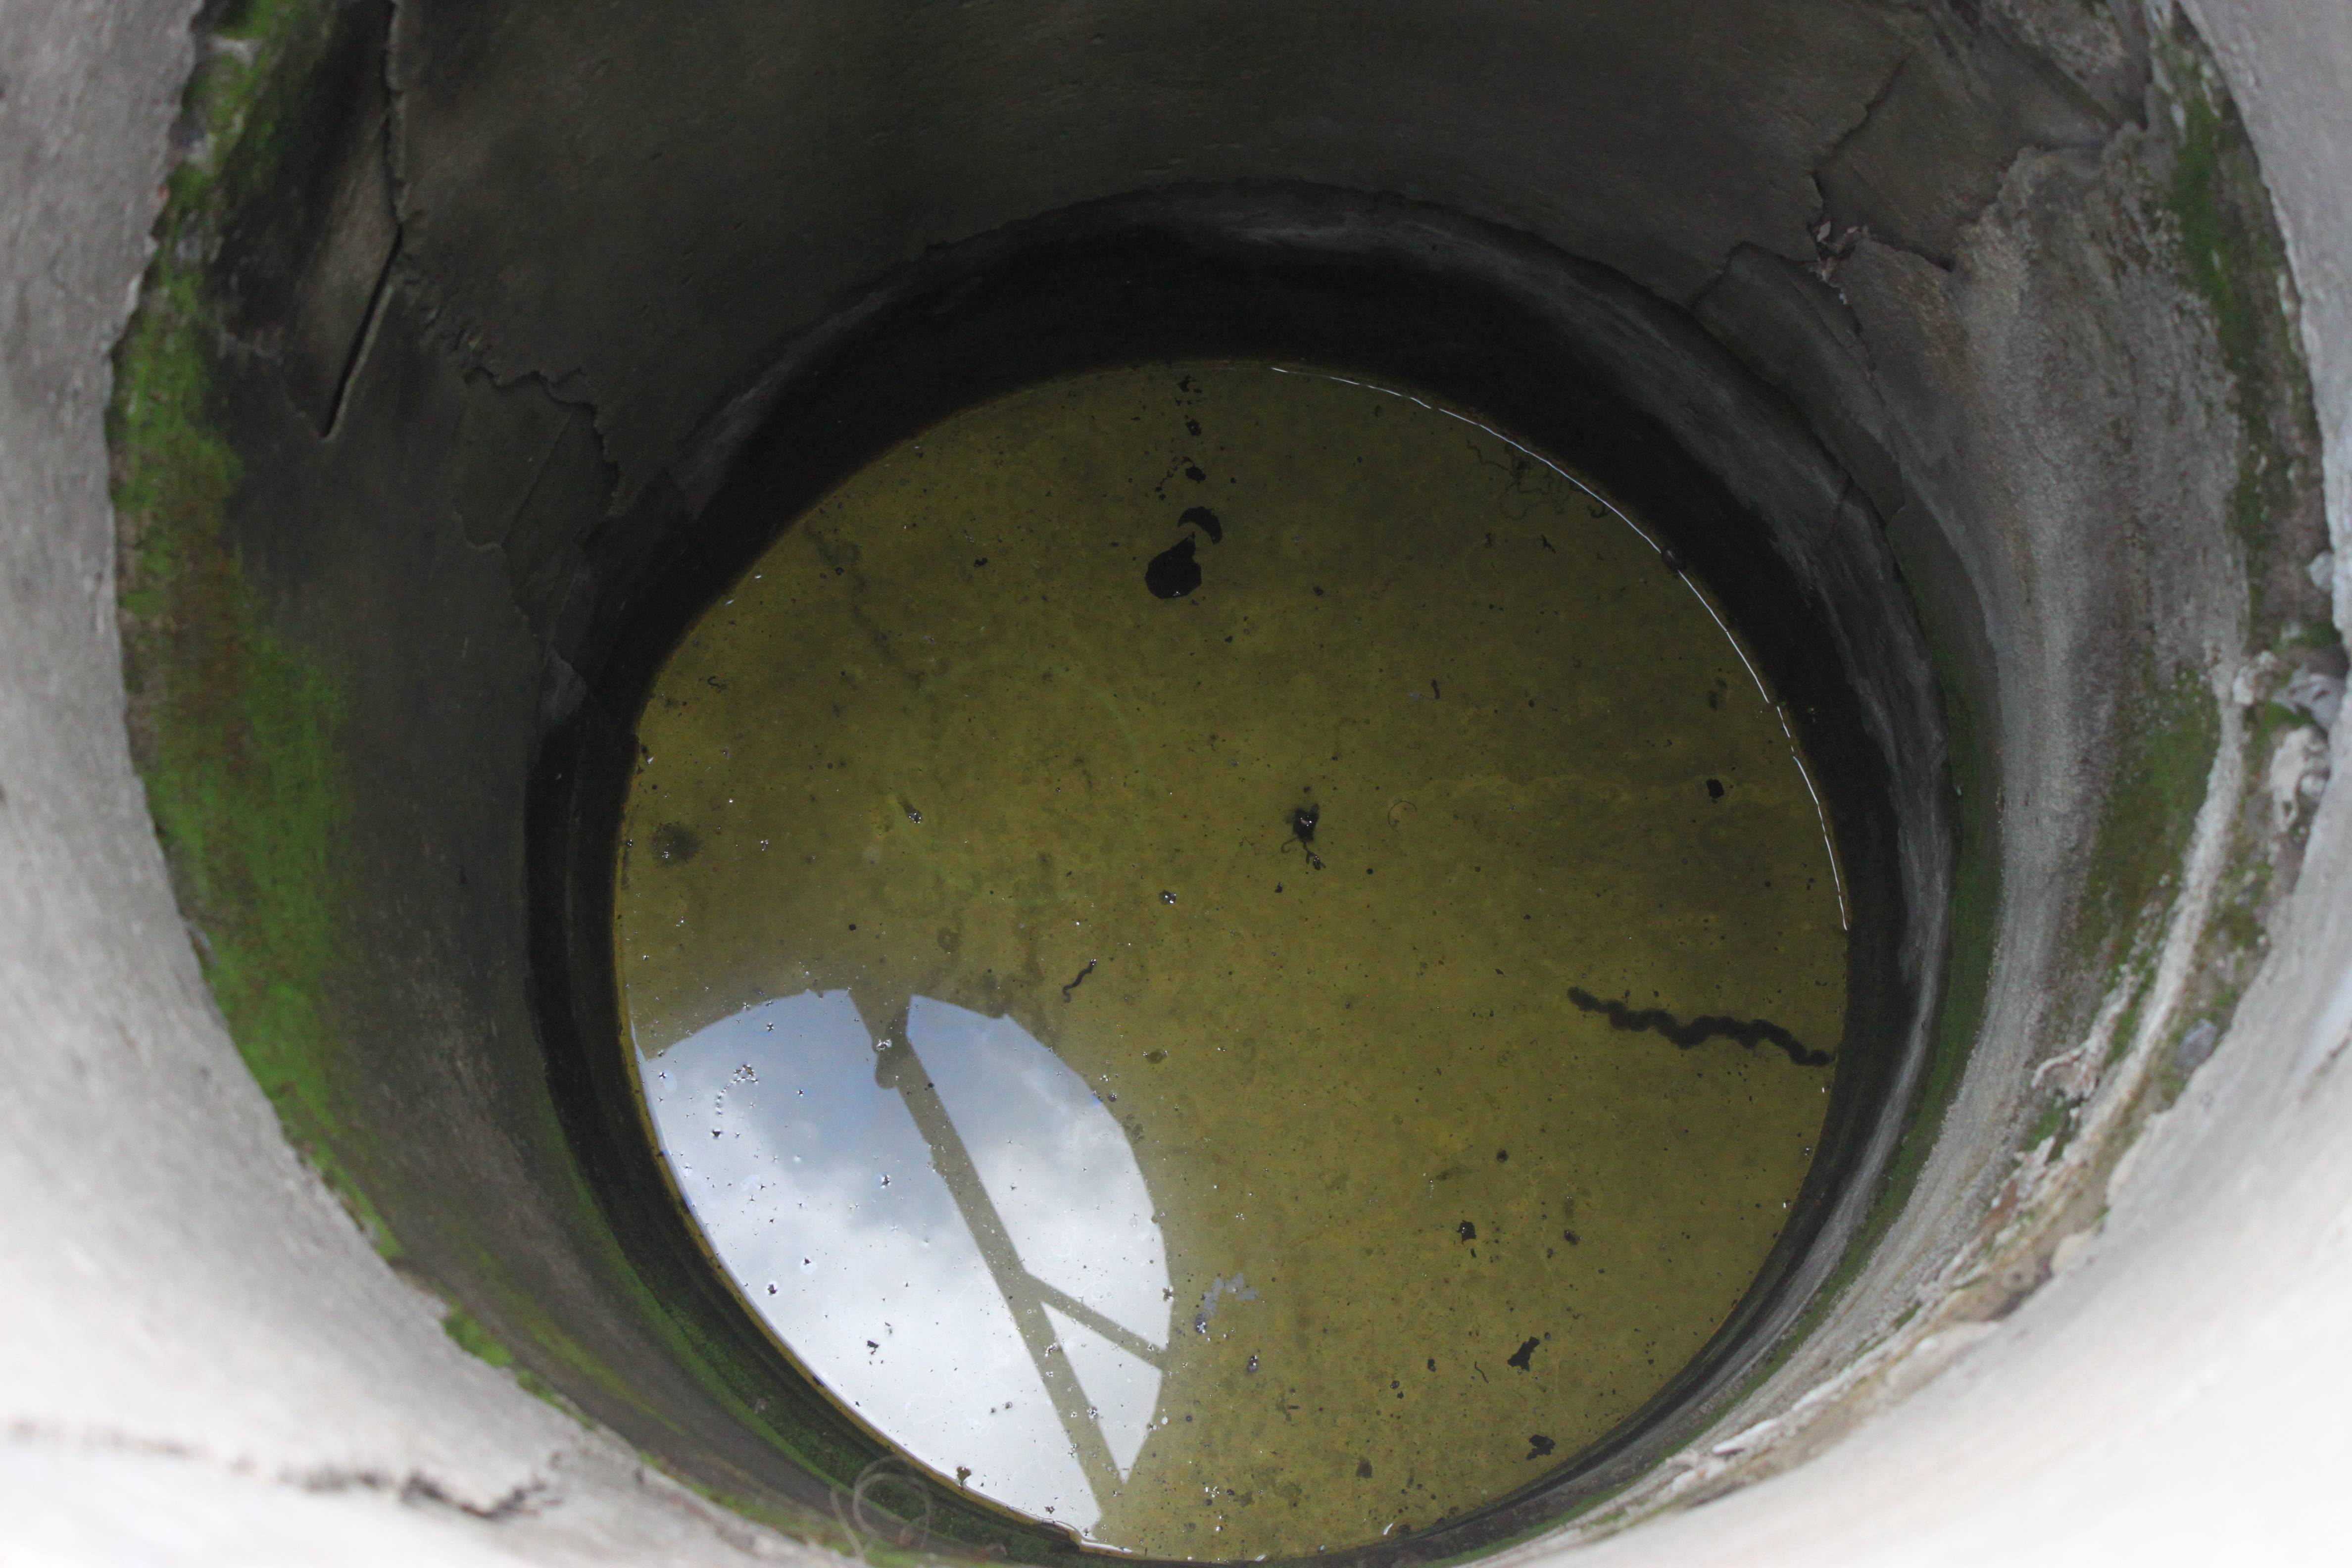 Система очистки воды из колодца - методы очистки и дезинфекции